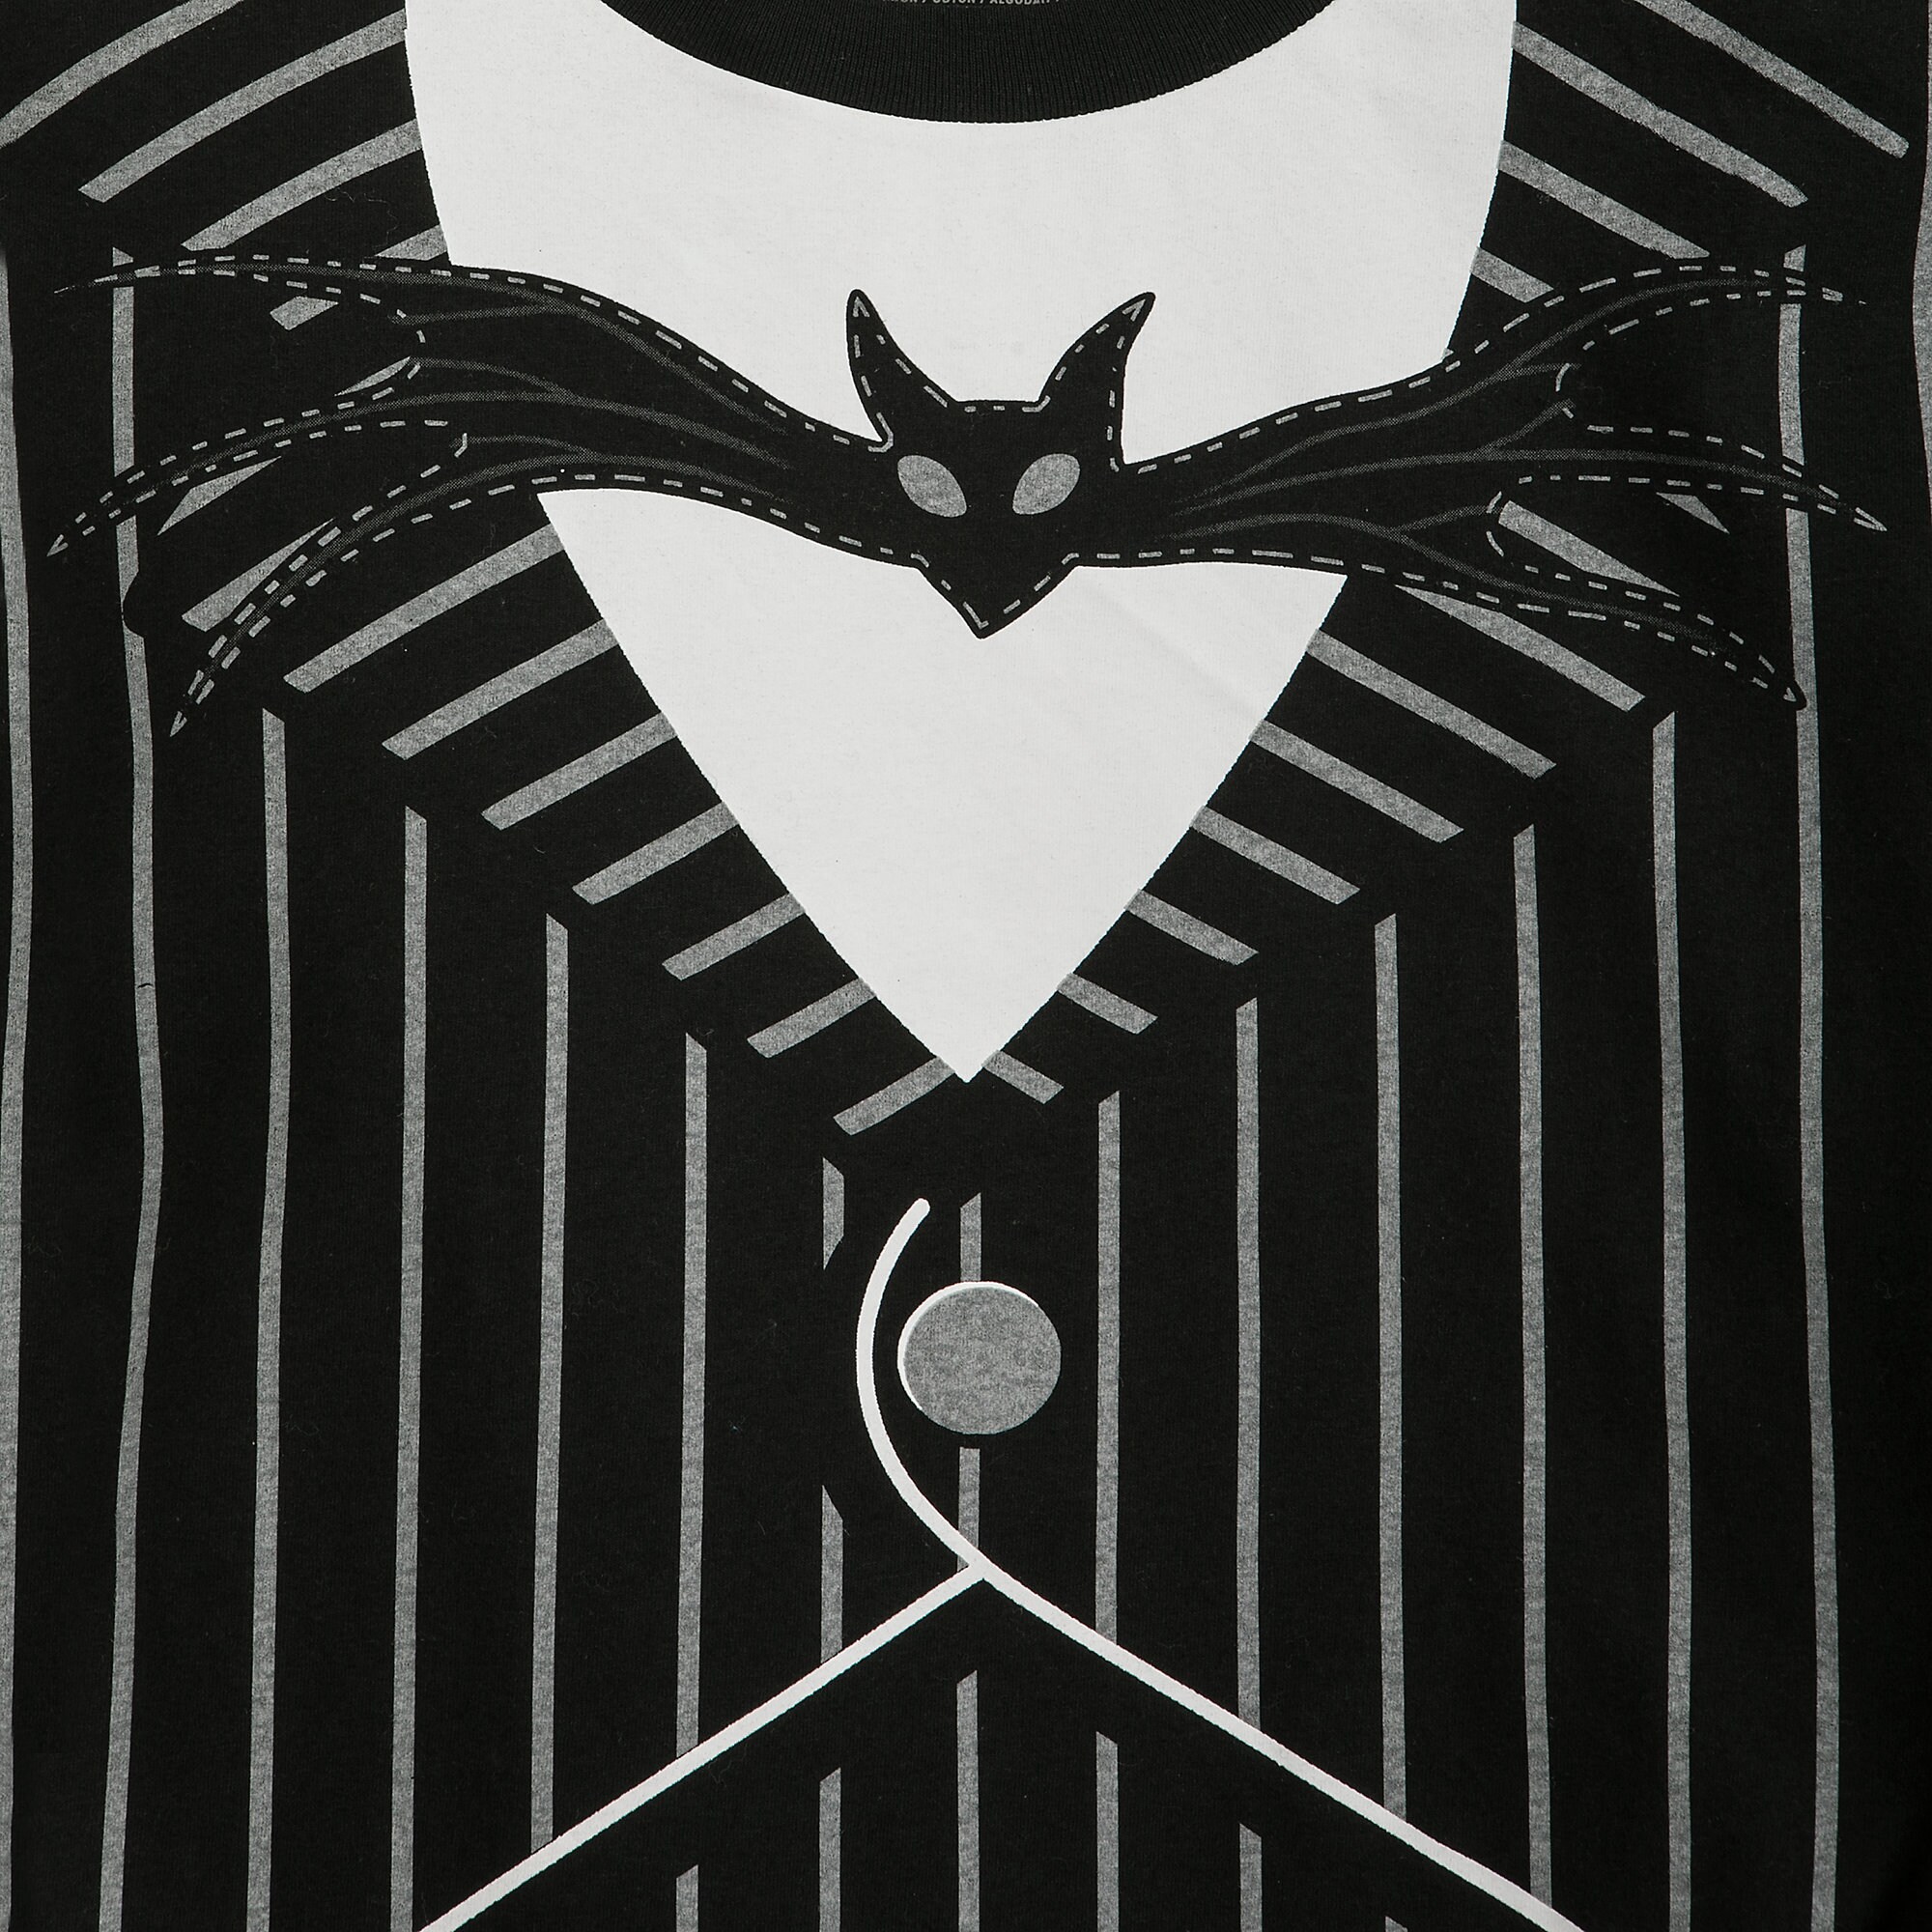 Jack Skellington Costume T-Shirt for Men